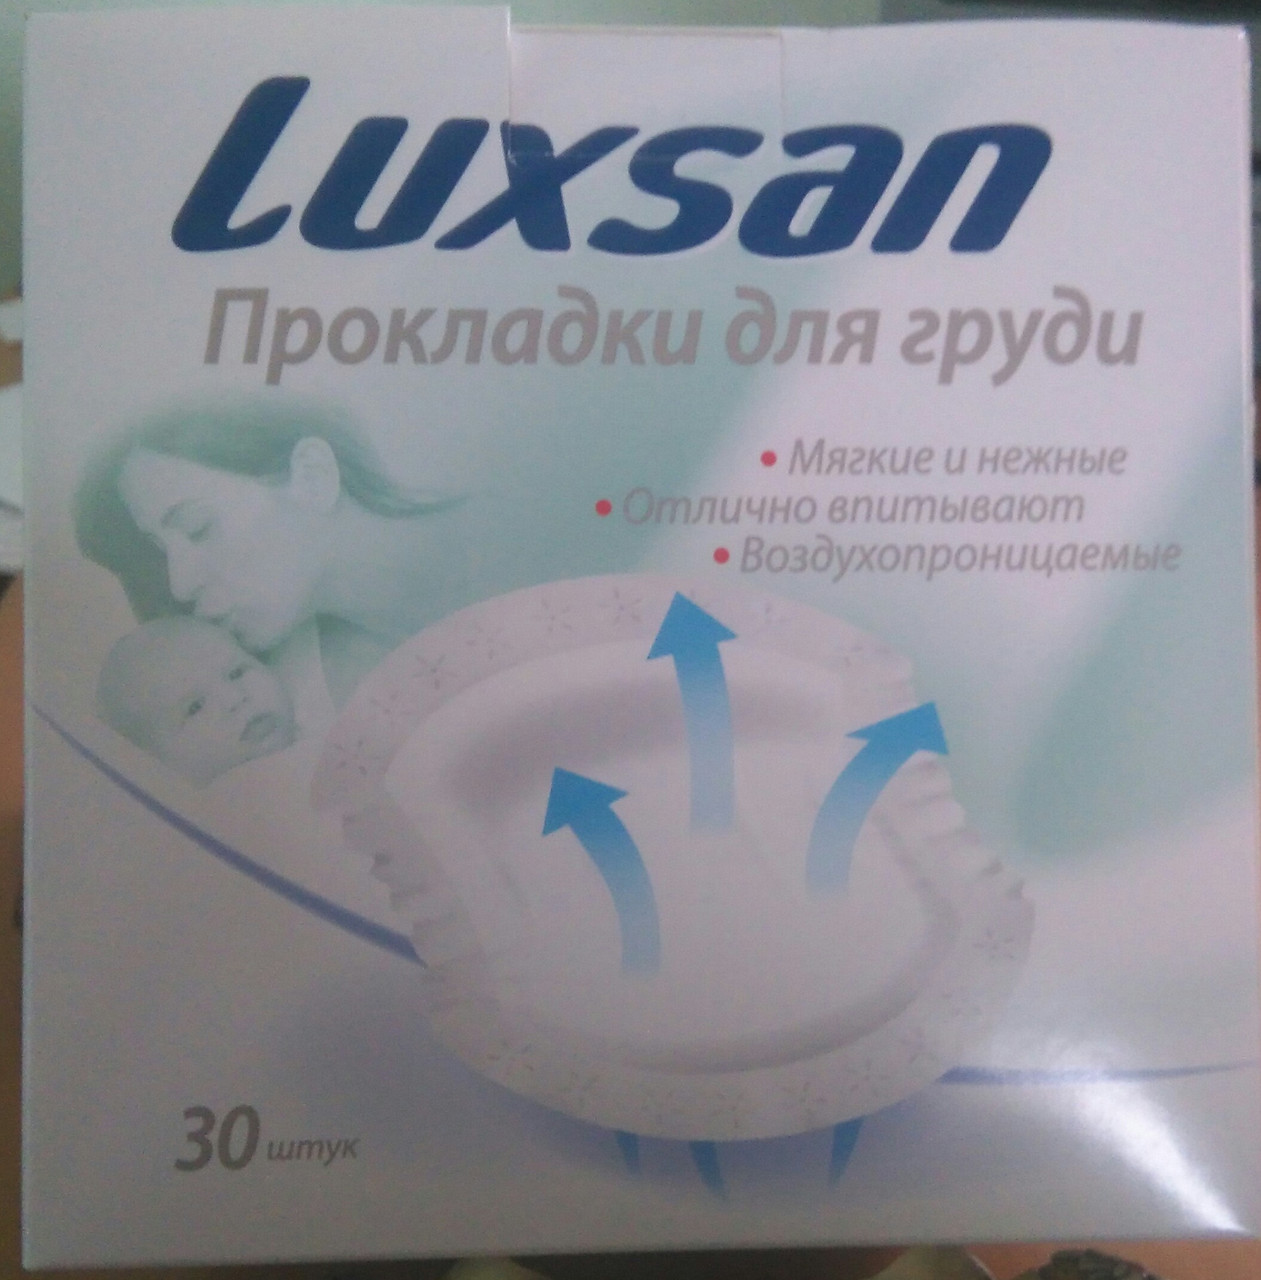 Прокладки (вкладыши) для груди Luxsan